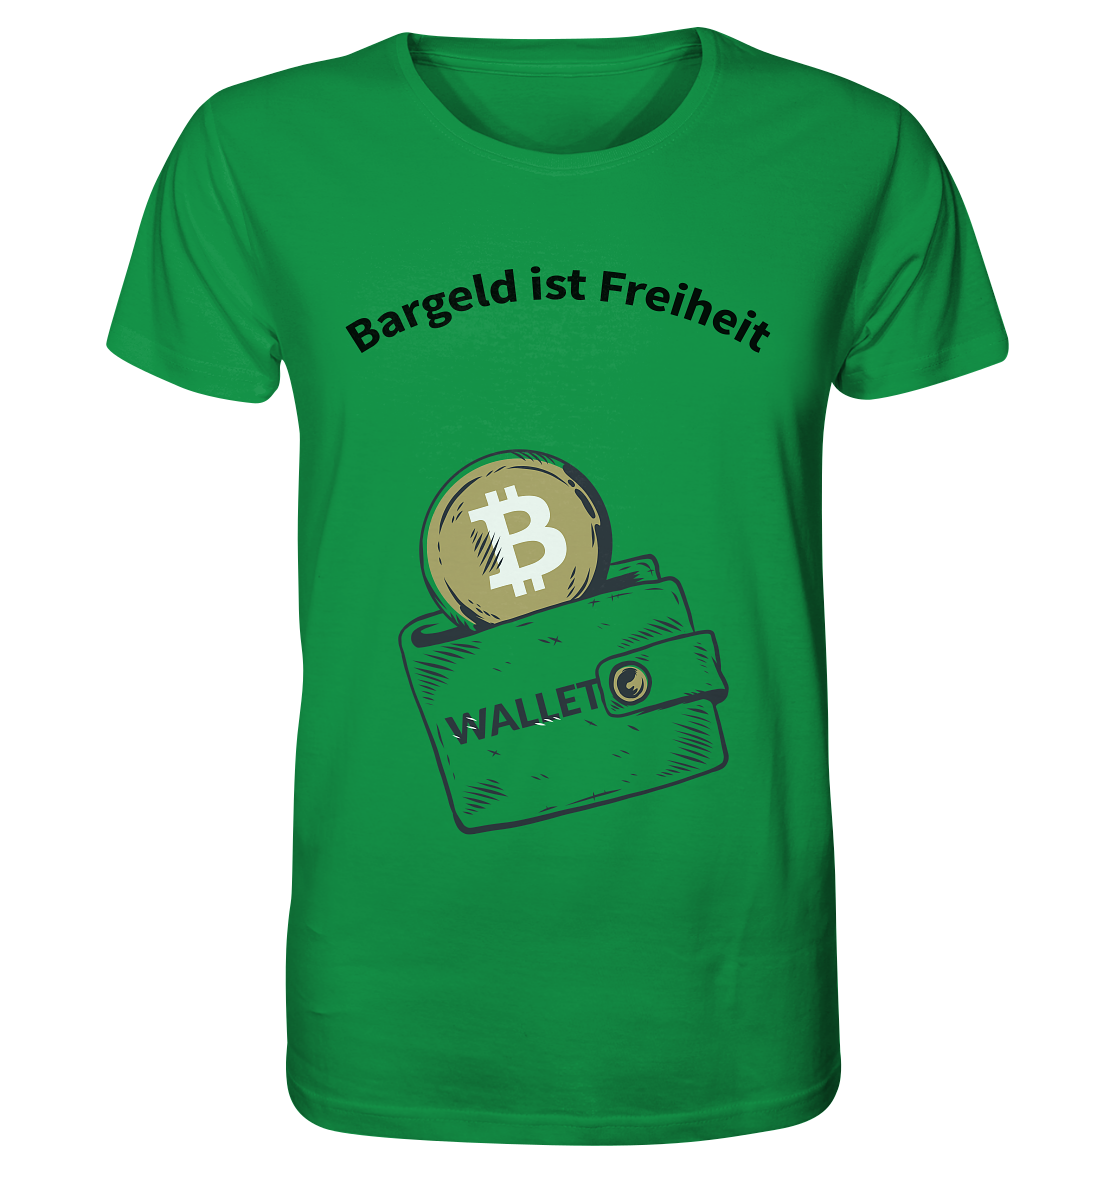 Bargeld ist Freiheit - Organic Shirt